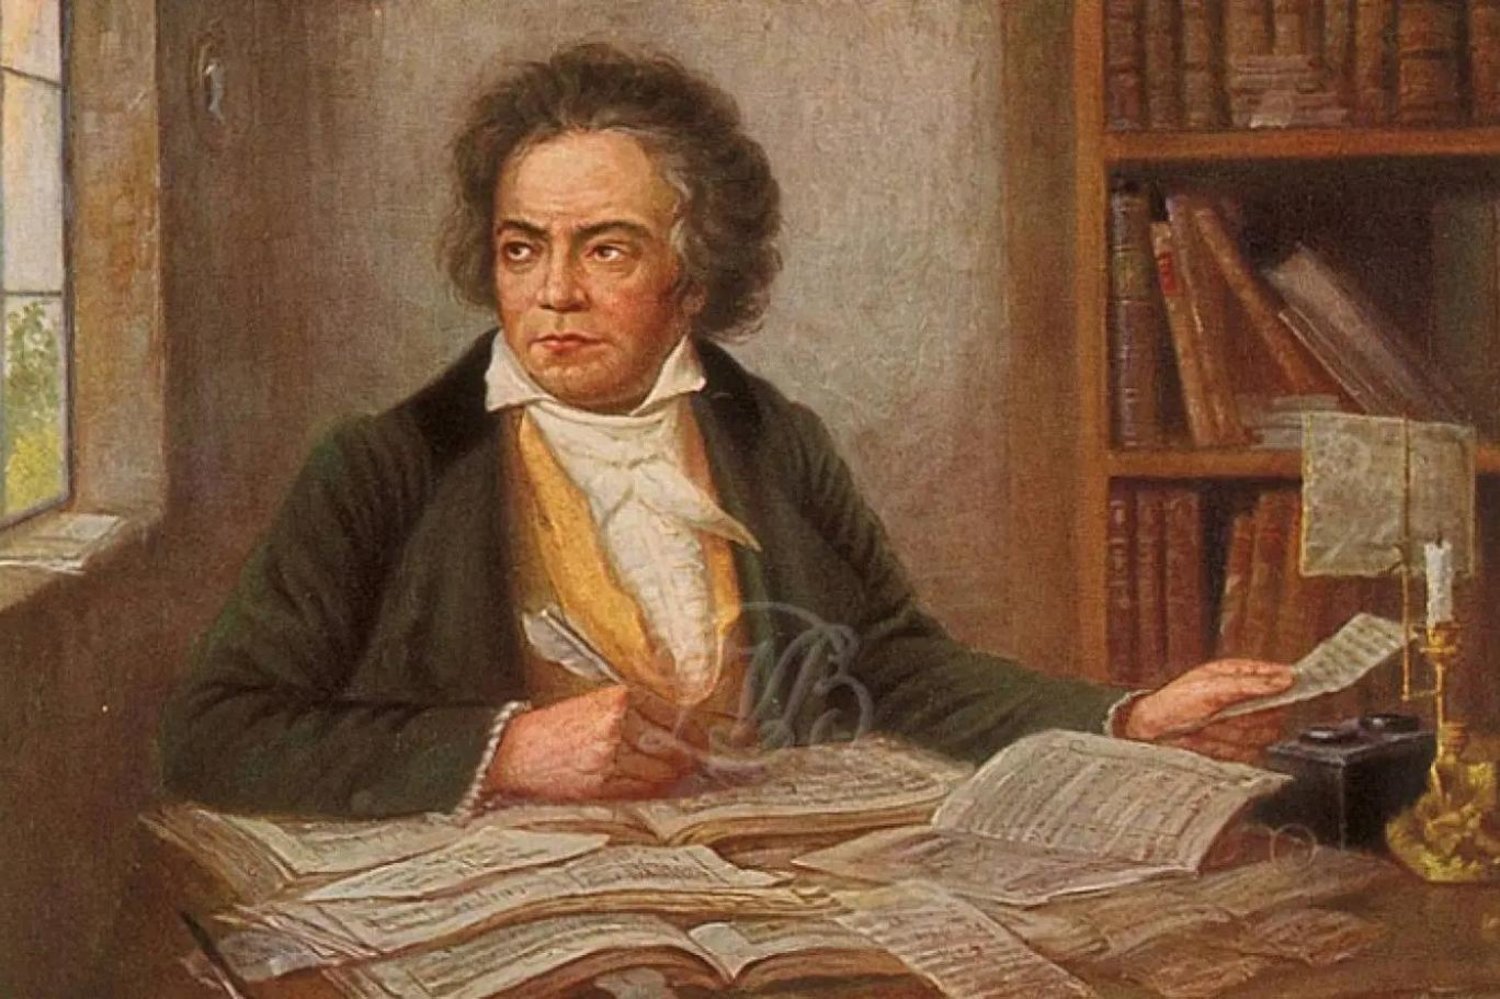 9 senfonisi, 5 piyano konçertosu, 32 piyano sonatı, 16 yaylı dörtlüsü ve hayatı boyunca yazdığı tek opera olan Fidelio, Beethoven'ın en çok bilinen eserlerinden (Wikimedia Commons)

